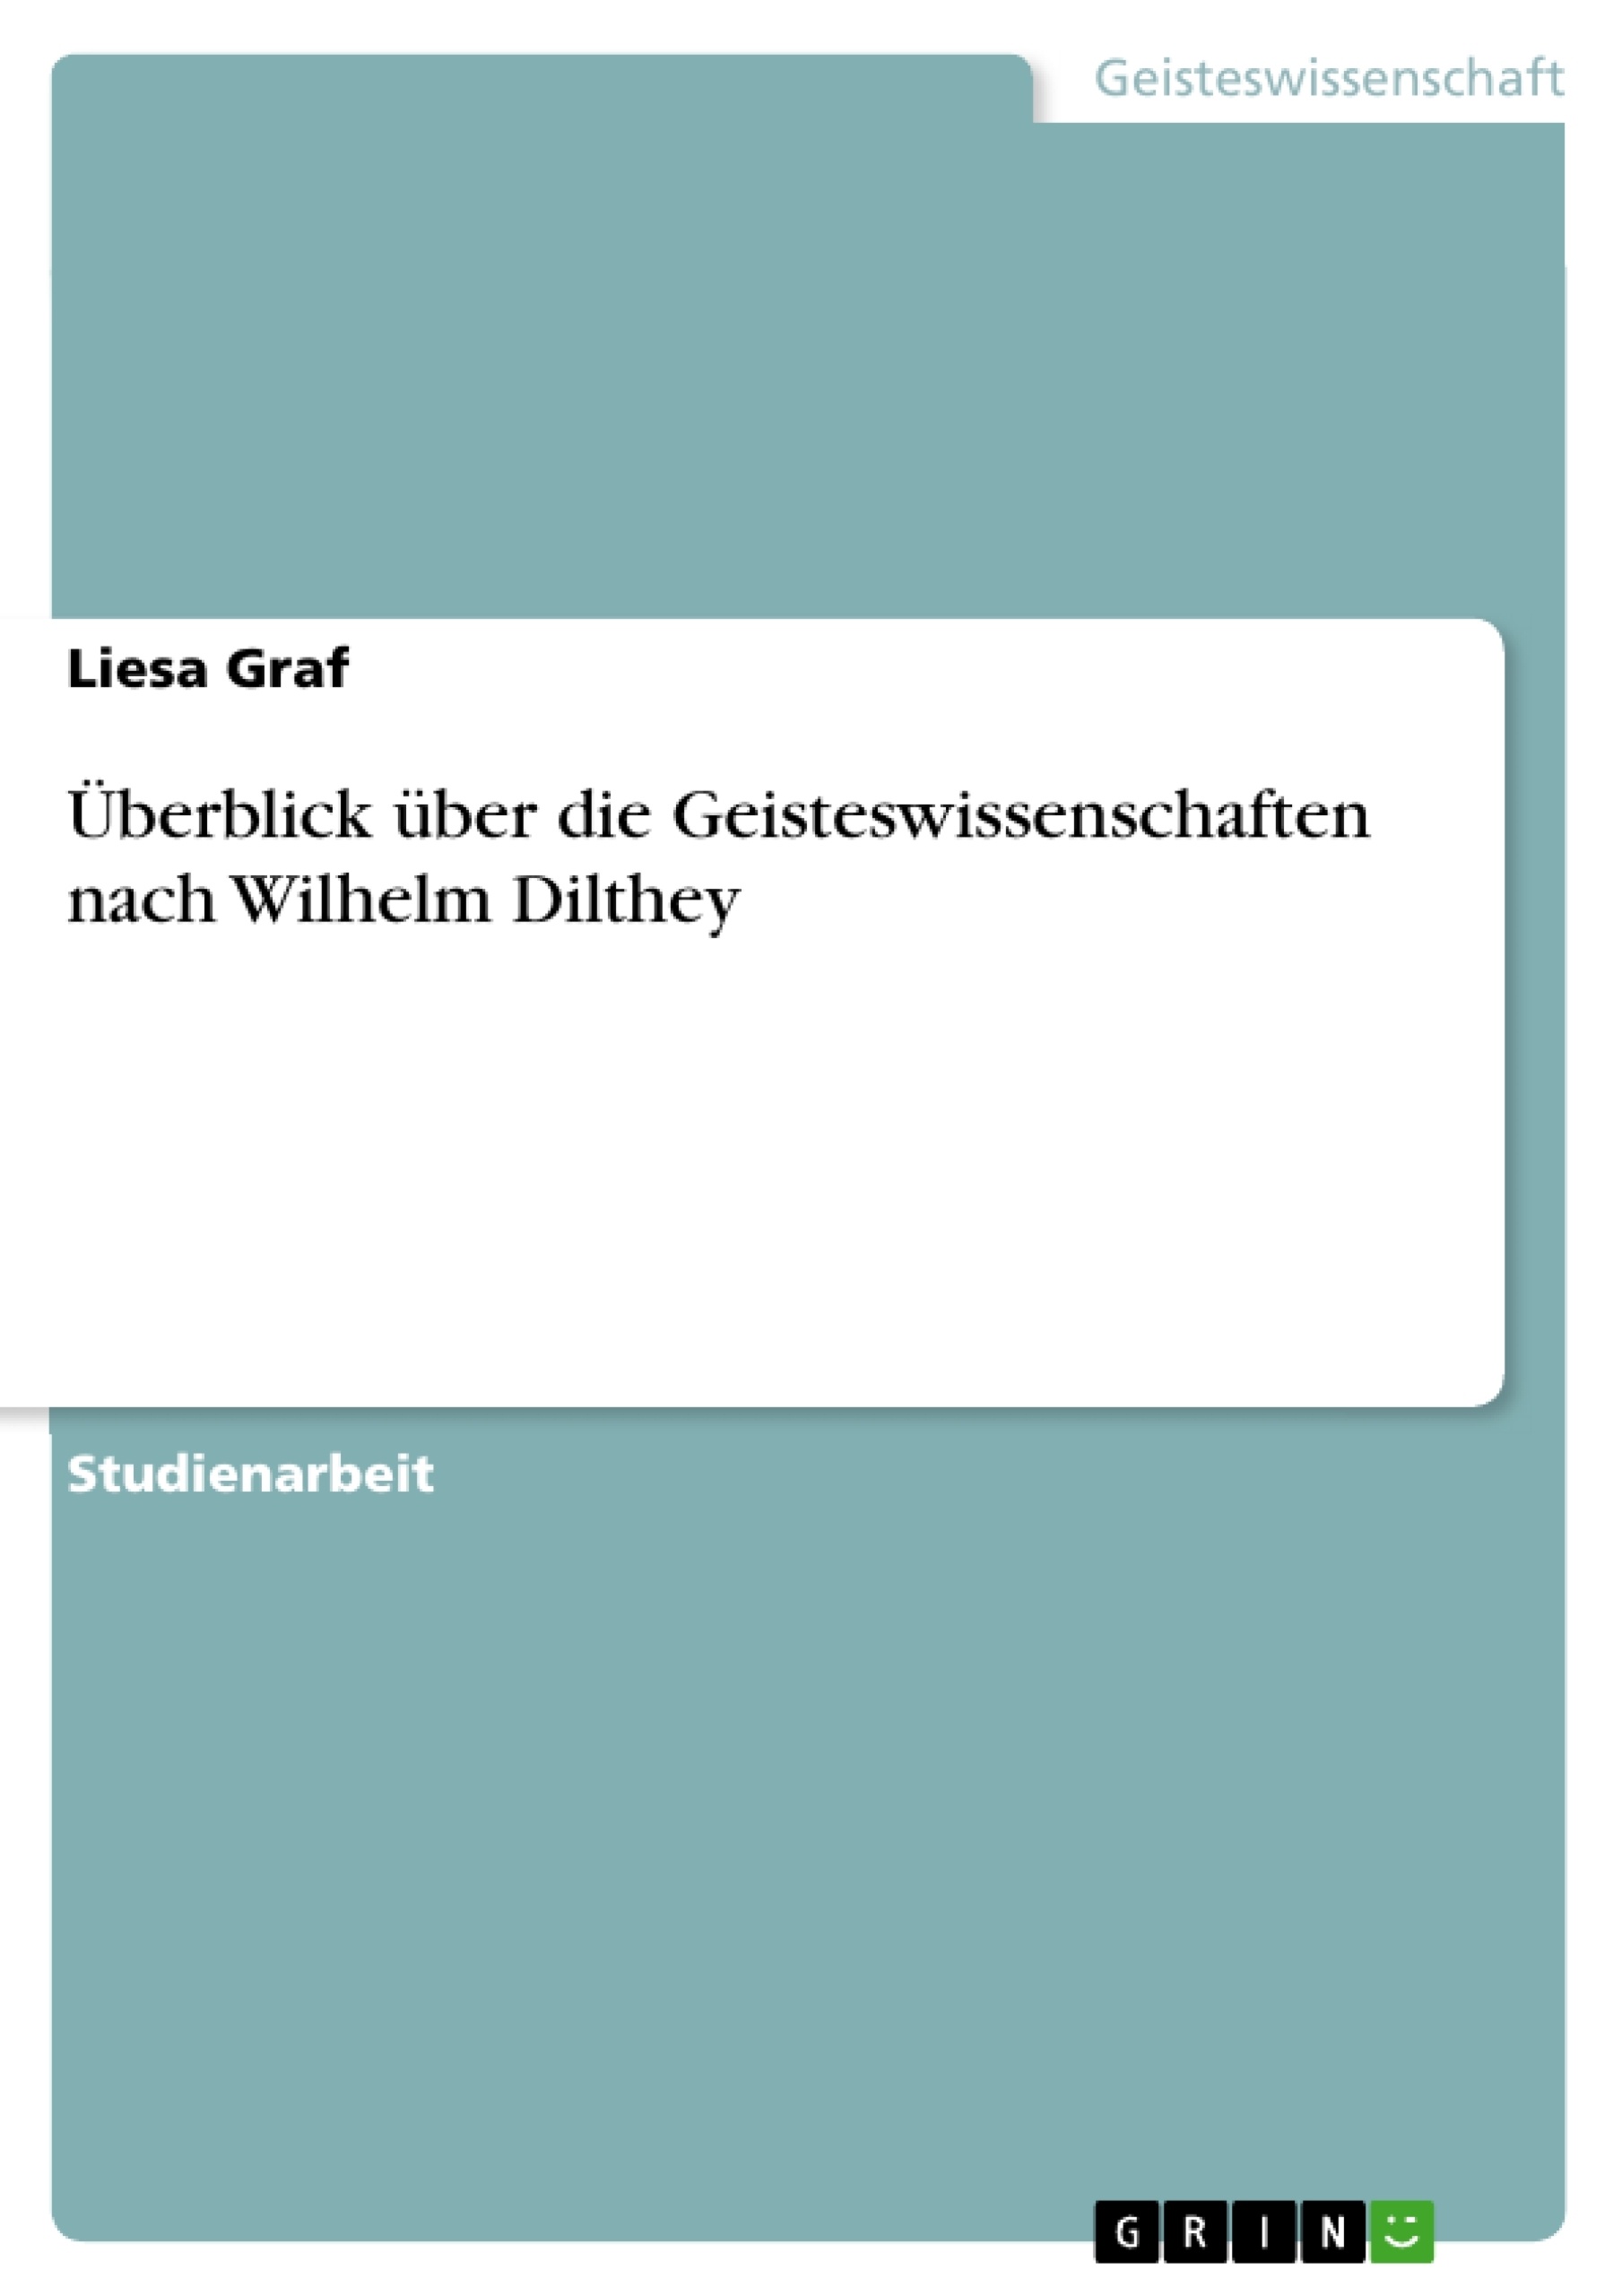 Título: Überblick über die Geisteswissenschaften nach Wilhelm Dilthey